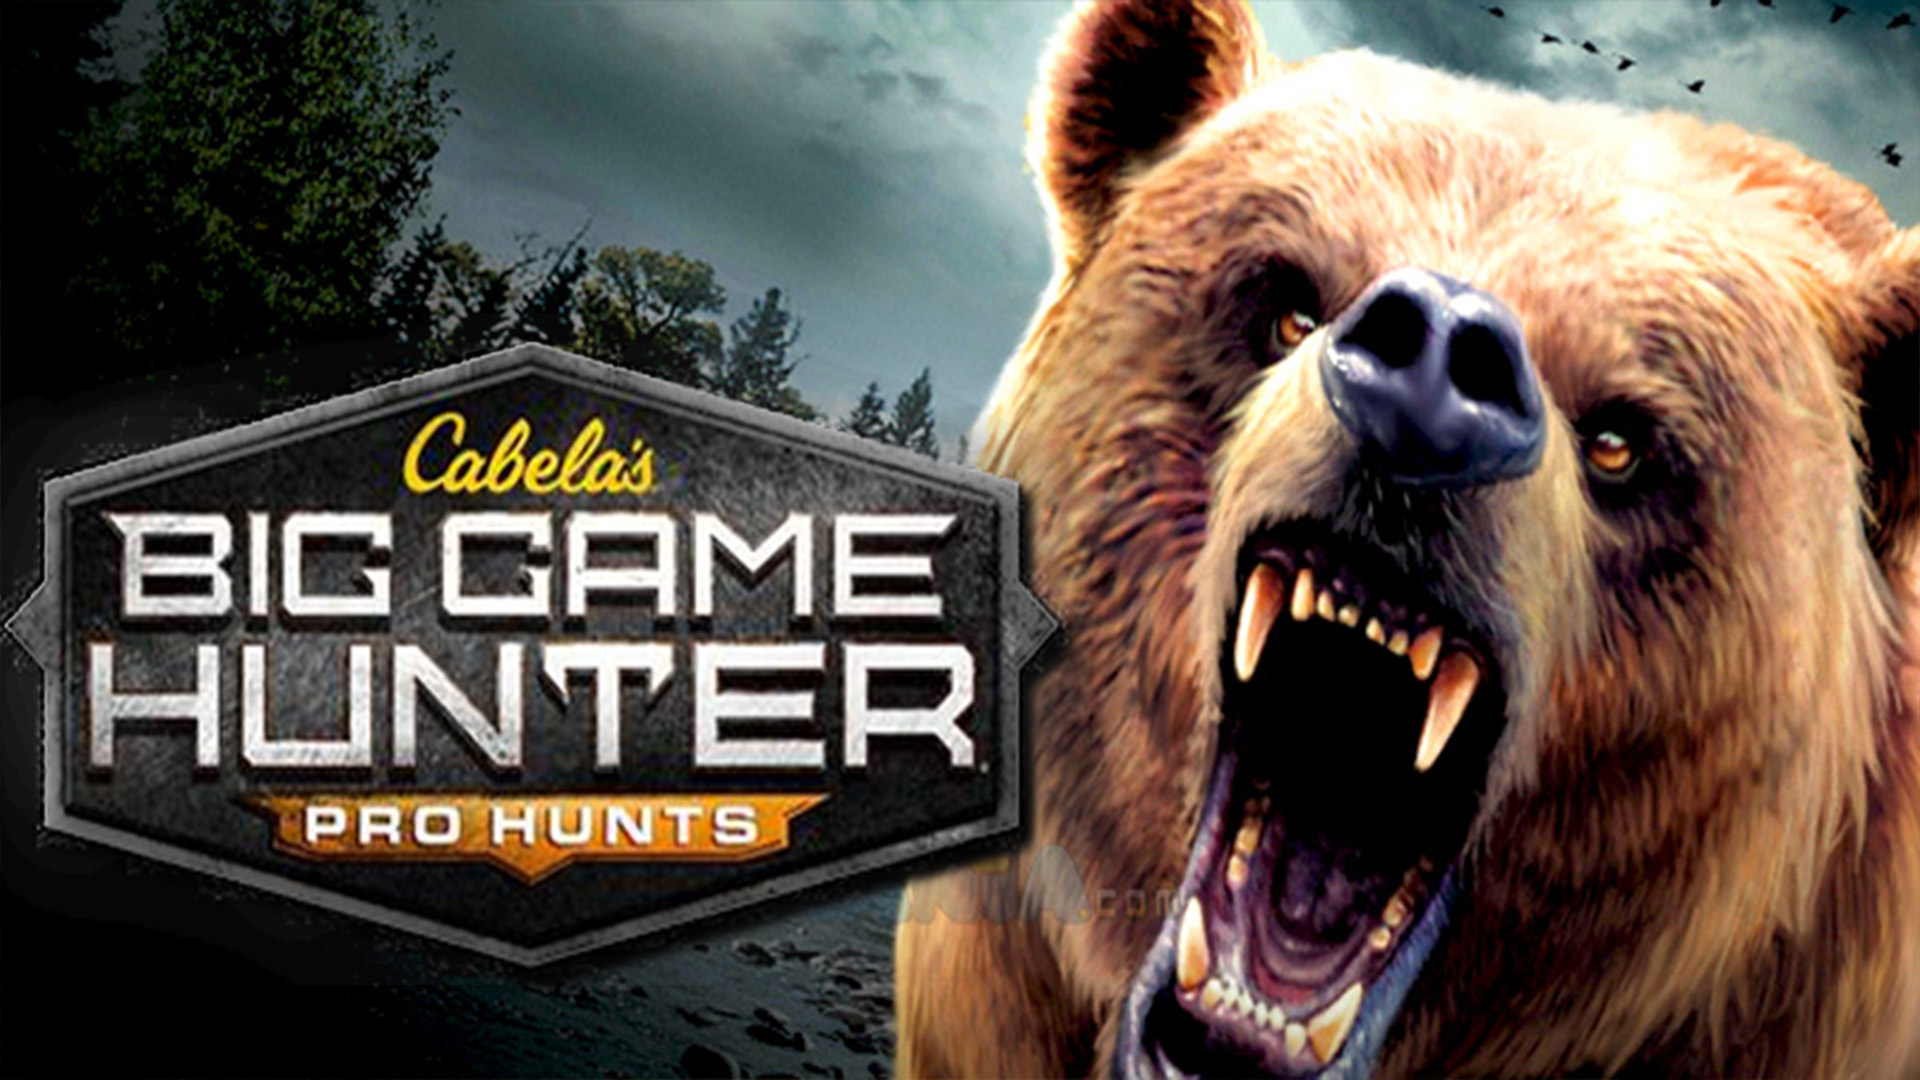 Cabela's Big Game Hunter Web Cabela's Big Game Hunter Pro Hunts.